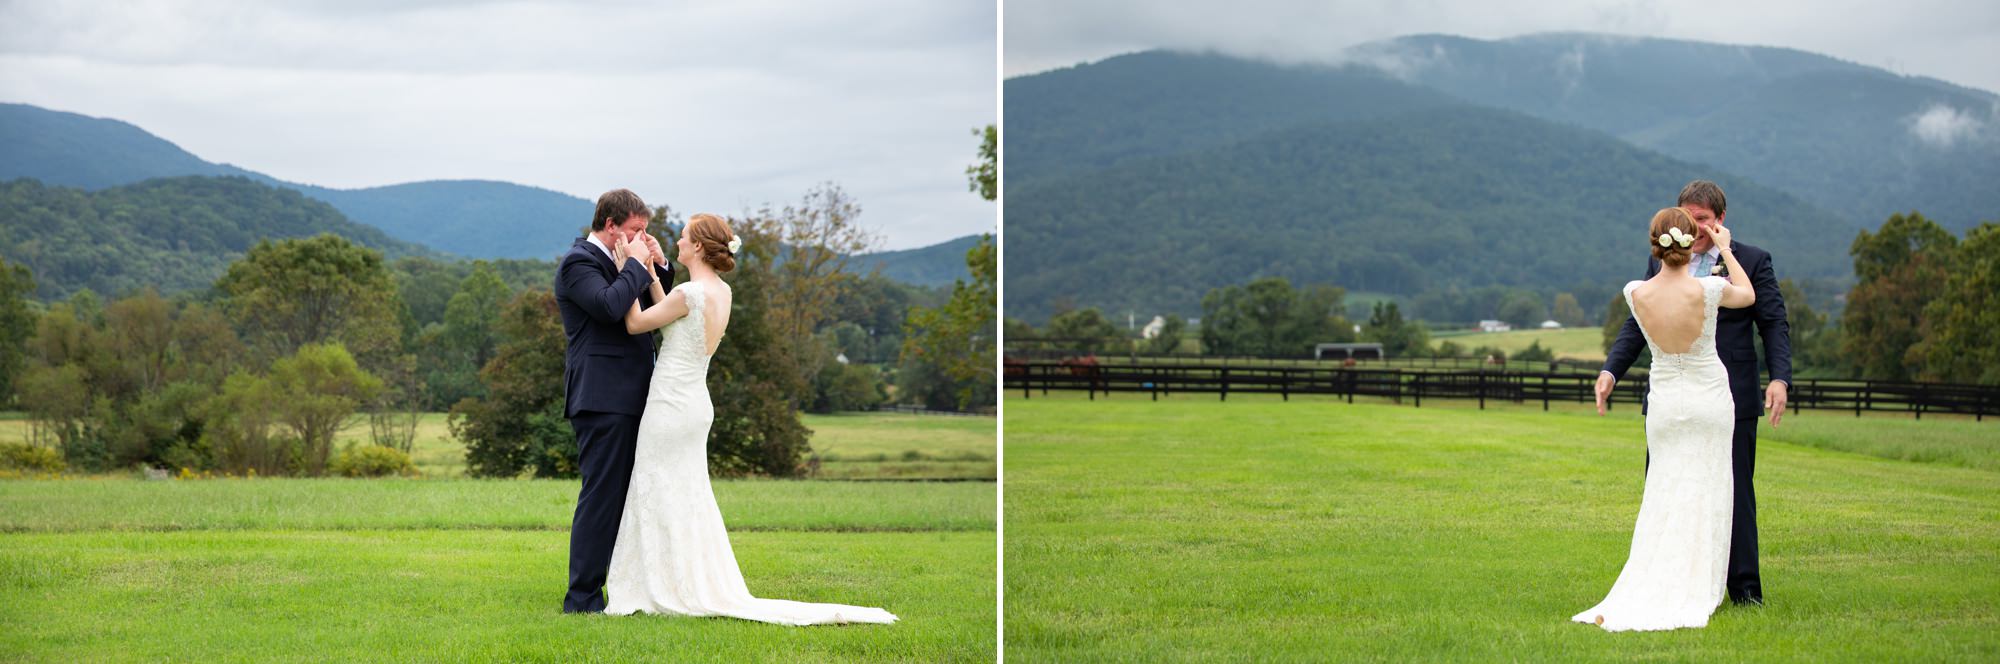 Fall Mountain Wedding Photography Virginia